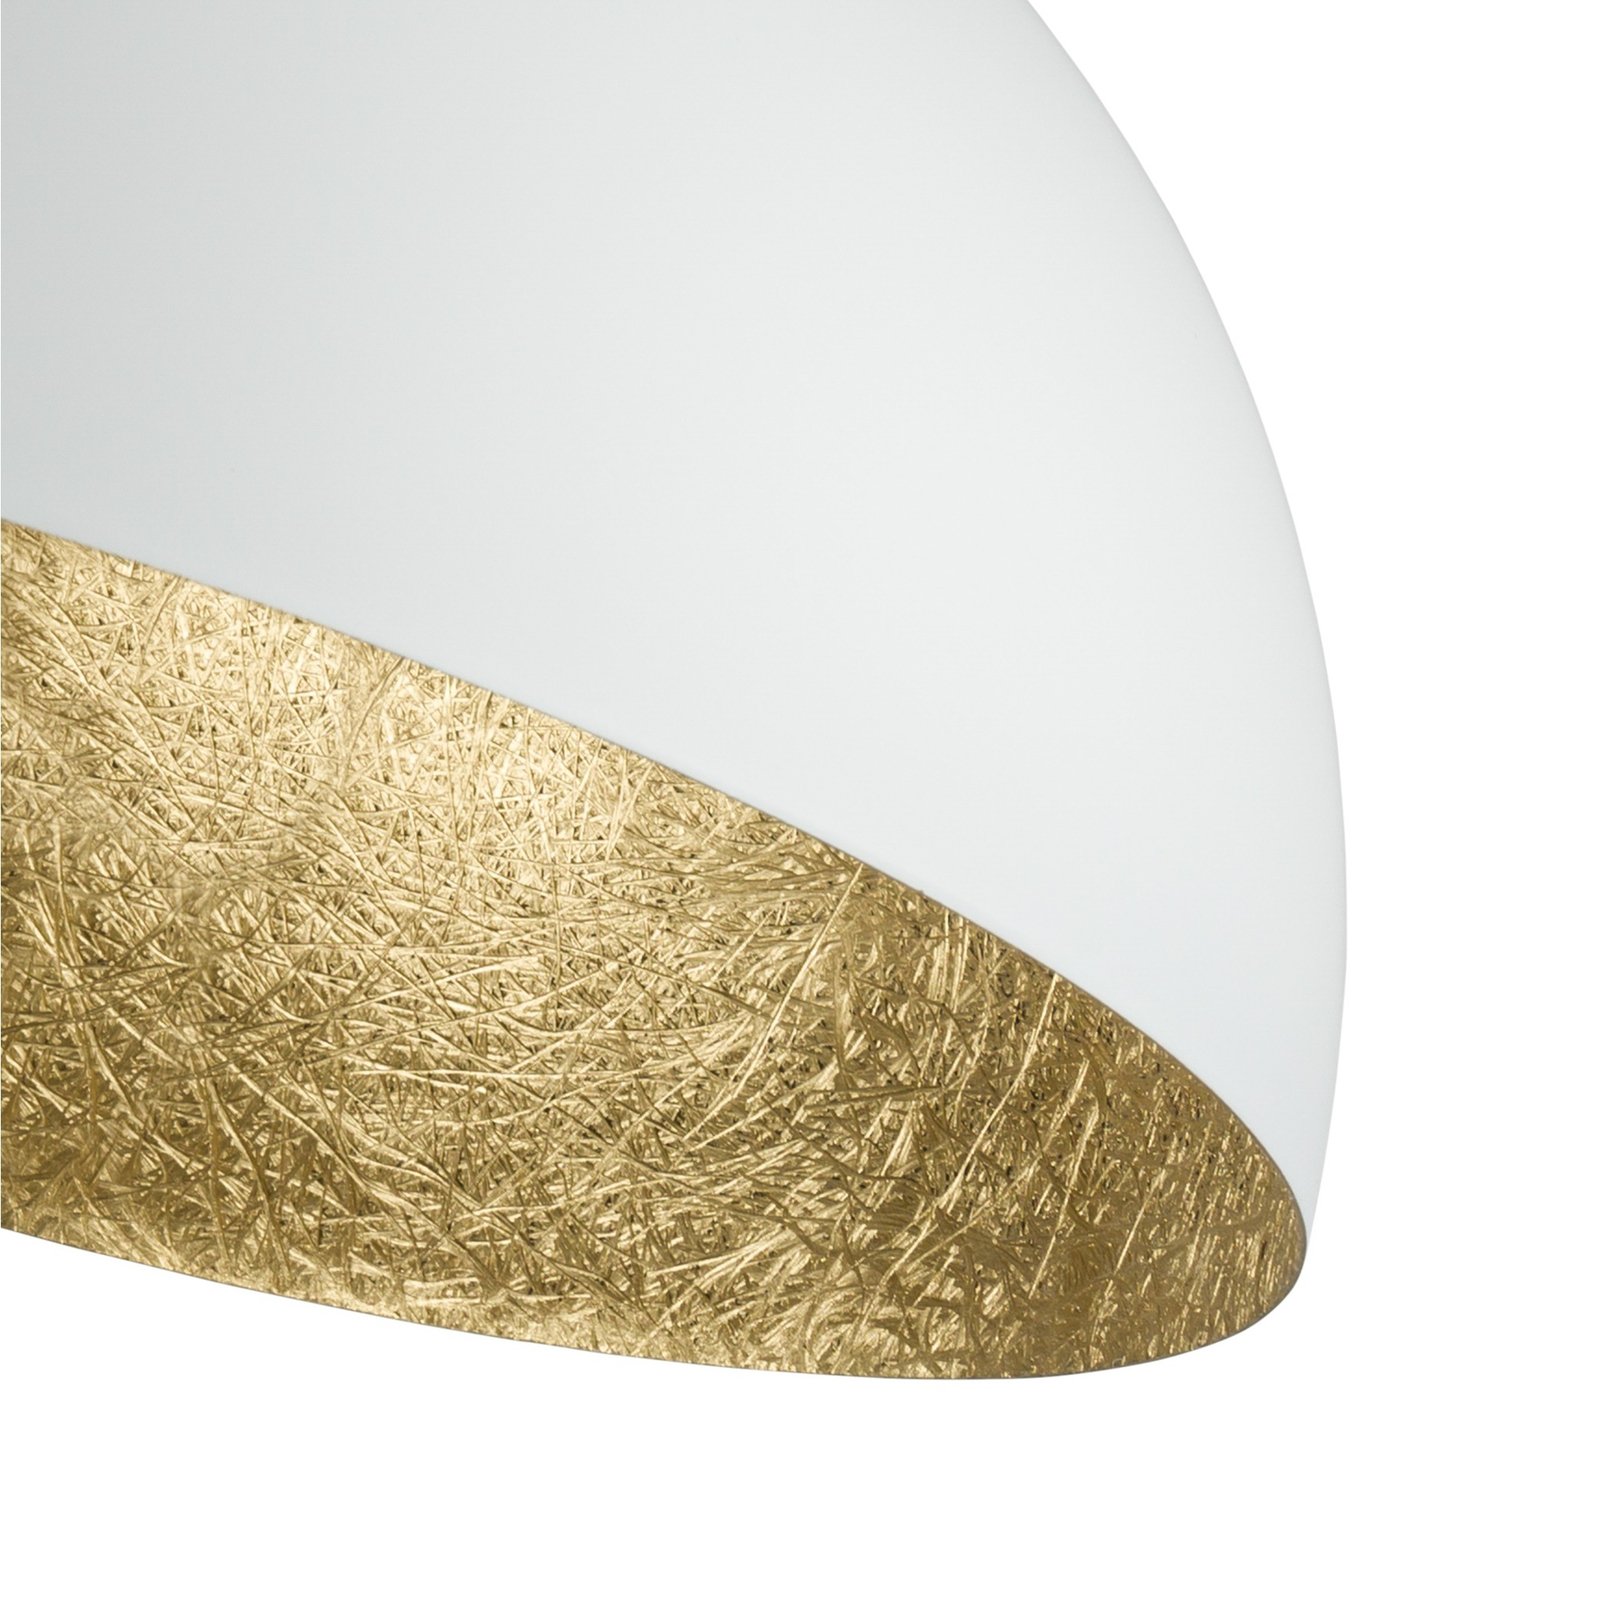 Stropní světlo Sfera, Ø 35cm, bílá/zlatá